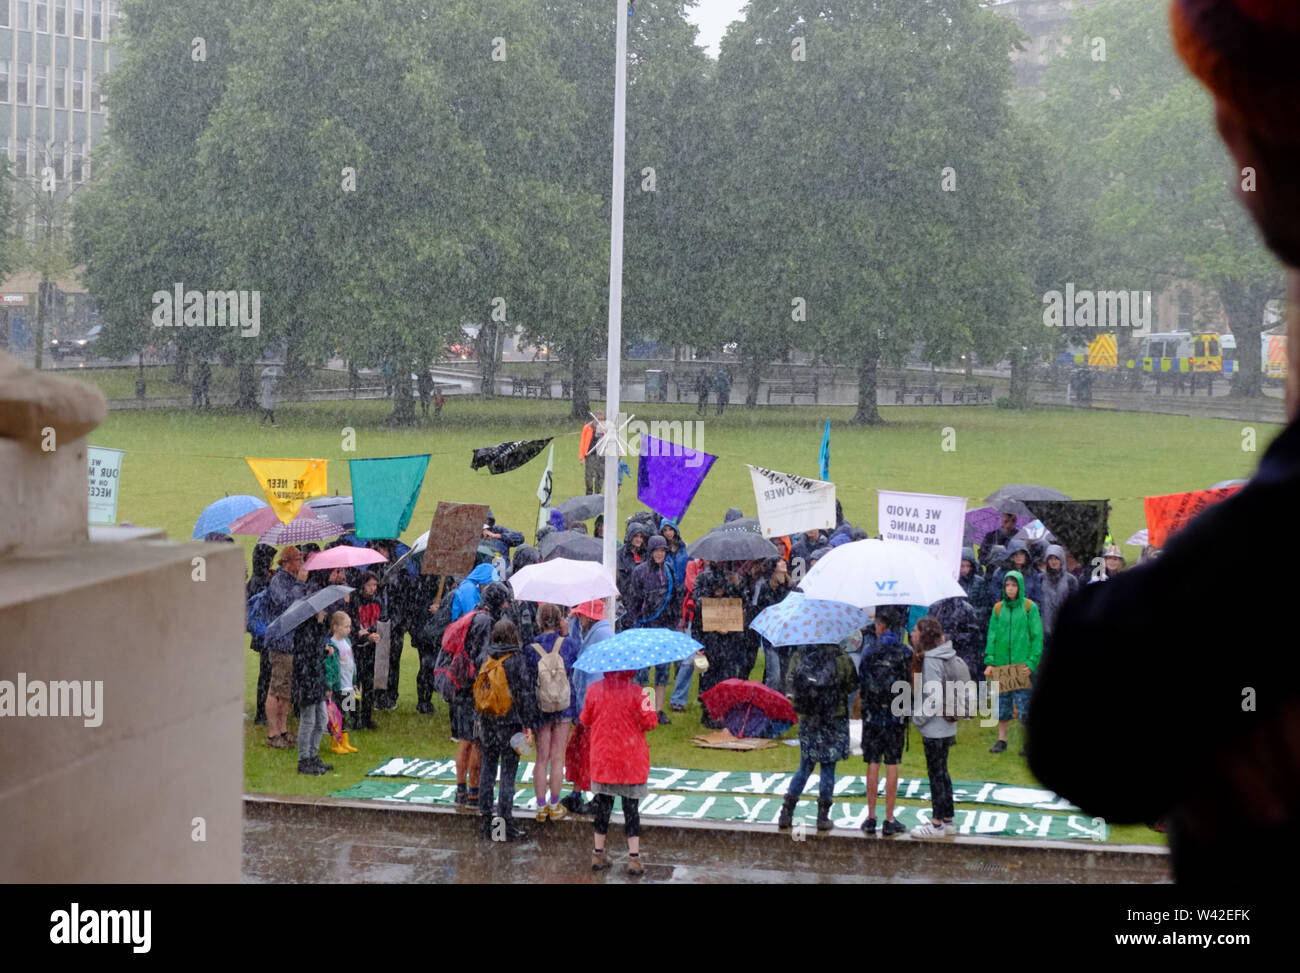 Bristol, Royaume-Uni. 19 juillet 2019. La pluie se déverse sur la rébellion d'extinction d'un rassemblement sur la jeunesse College Green dans le centre-ville de Bristol. C'est le 5e jour de la protestation contre le changement climatique dans la ville. Crédit : Mr Standfast/Alamy Live News Banque D'Images